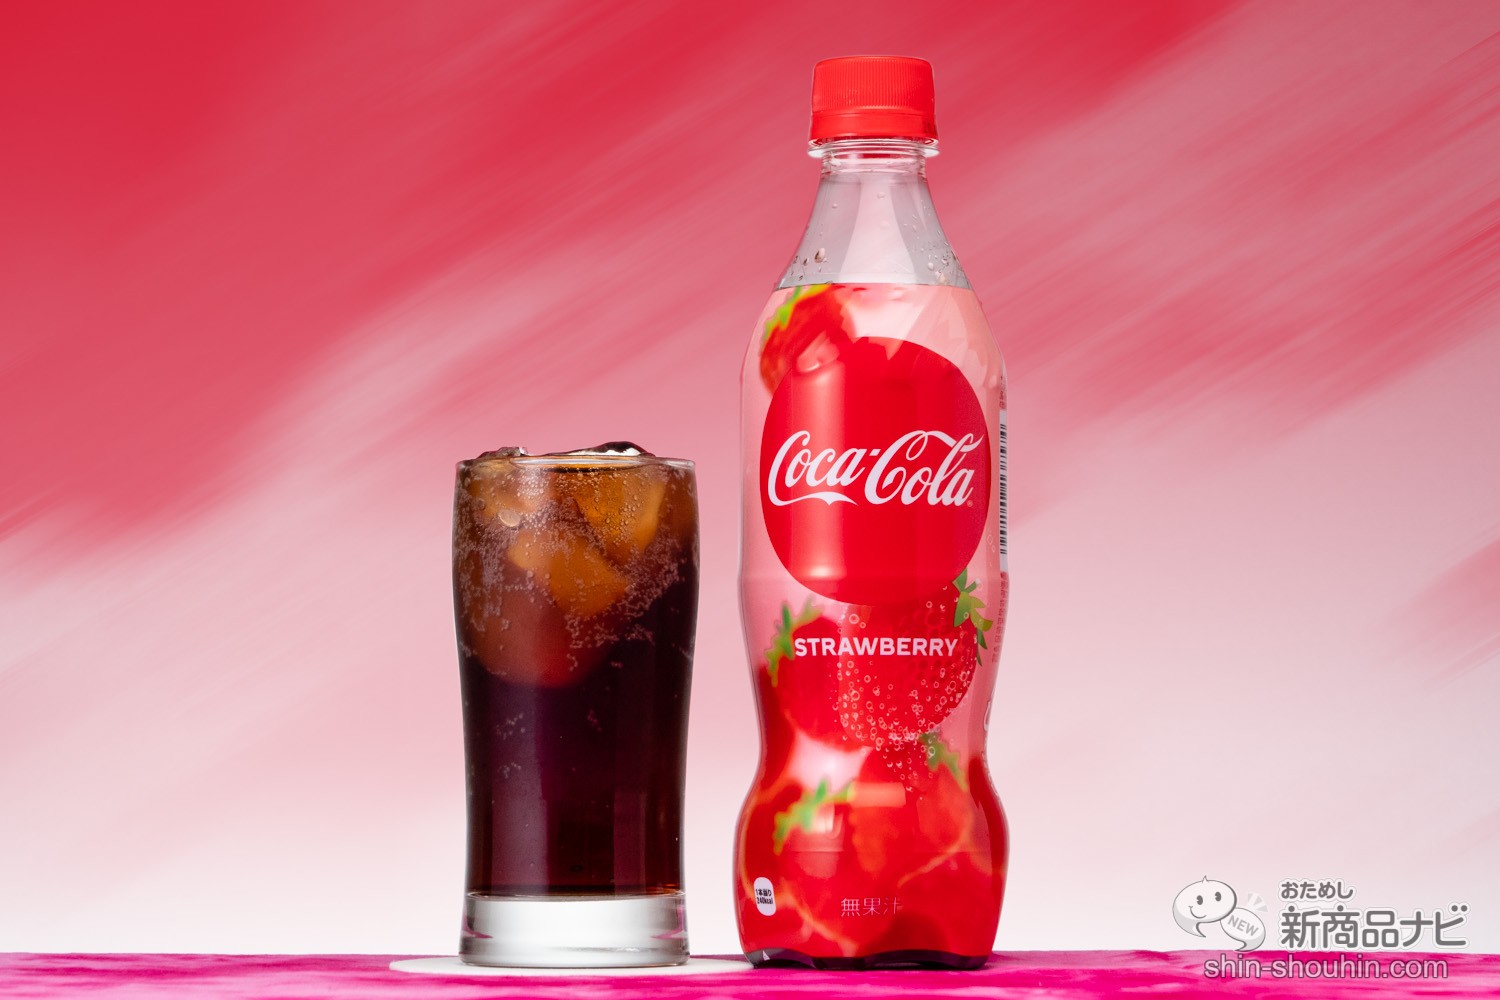 おためし新商品ナビ Blog Archive 飲んでみた 世界初フレーバー コカ コーラ ストロベリー 旬のイチゴとコーラの相性は